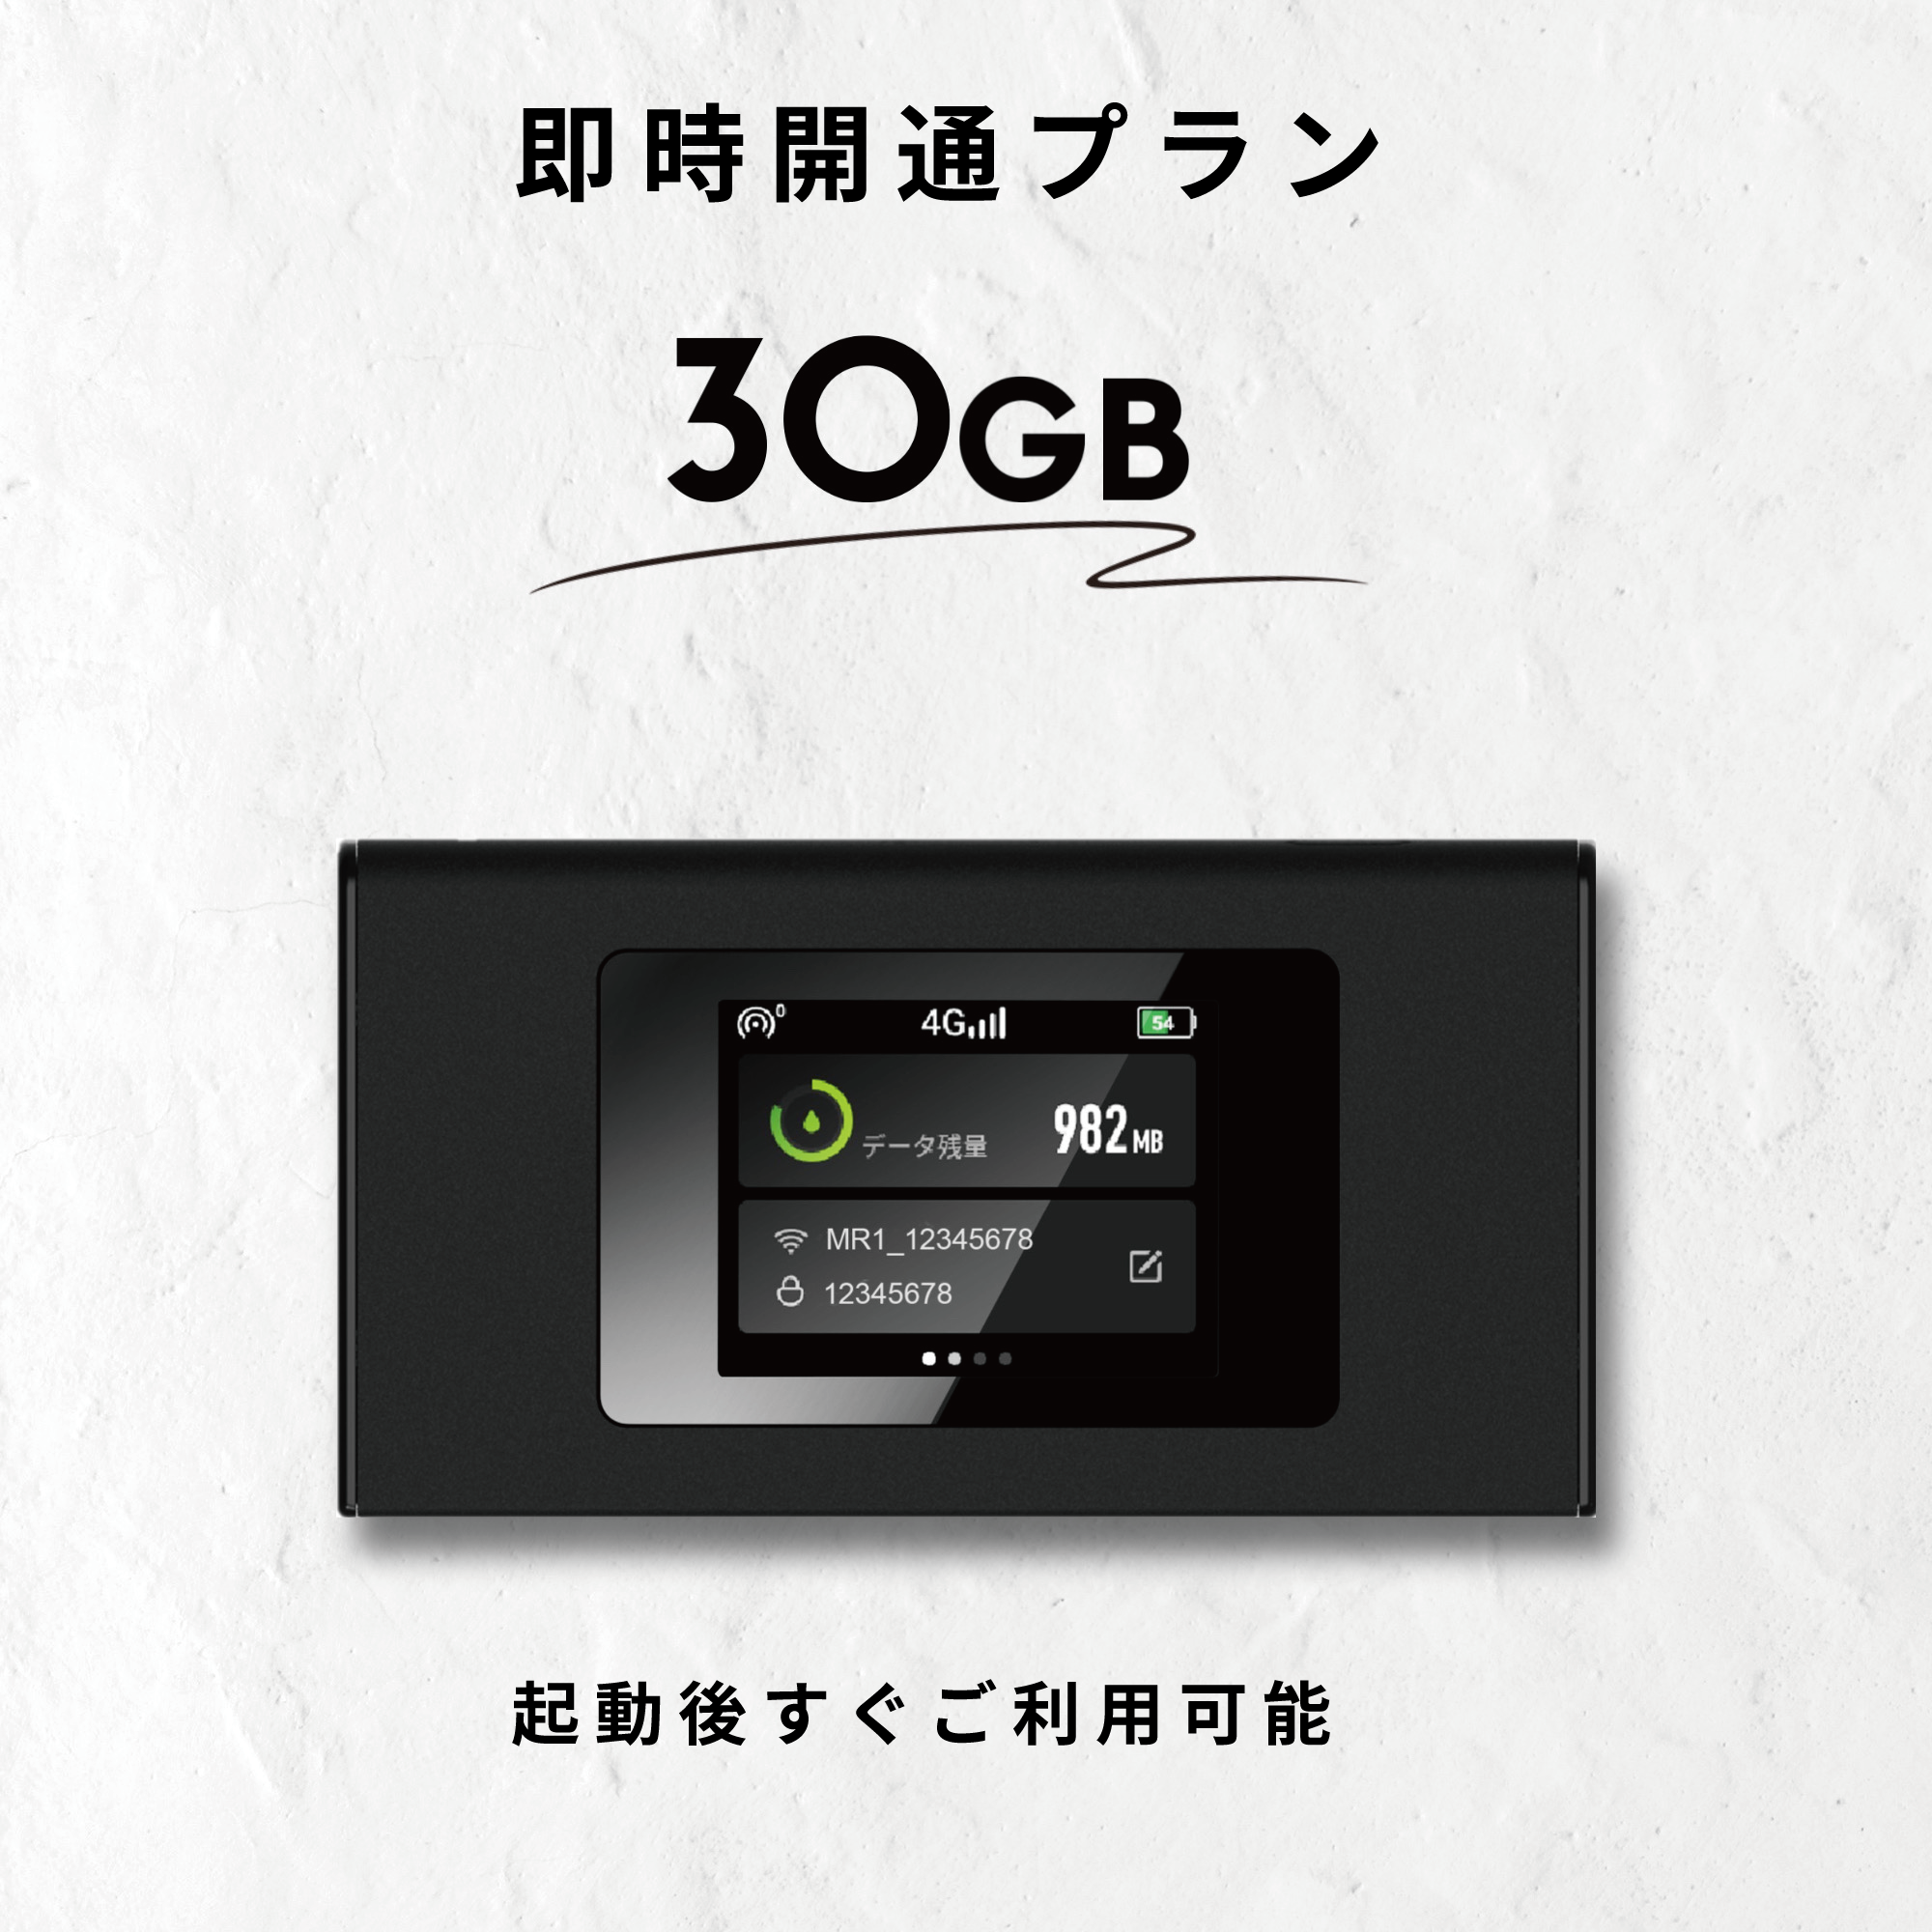 ギガセット【公式】新しいモバイルWiFiルーター 100GB付月額費用なし ...